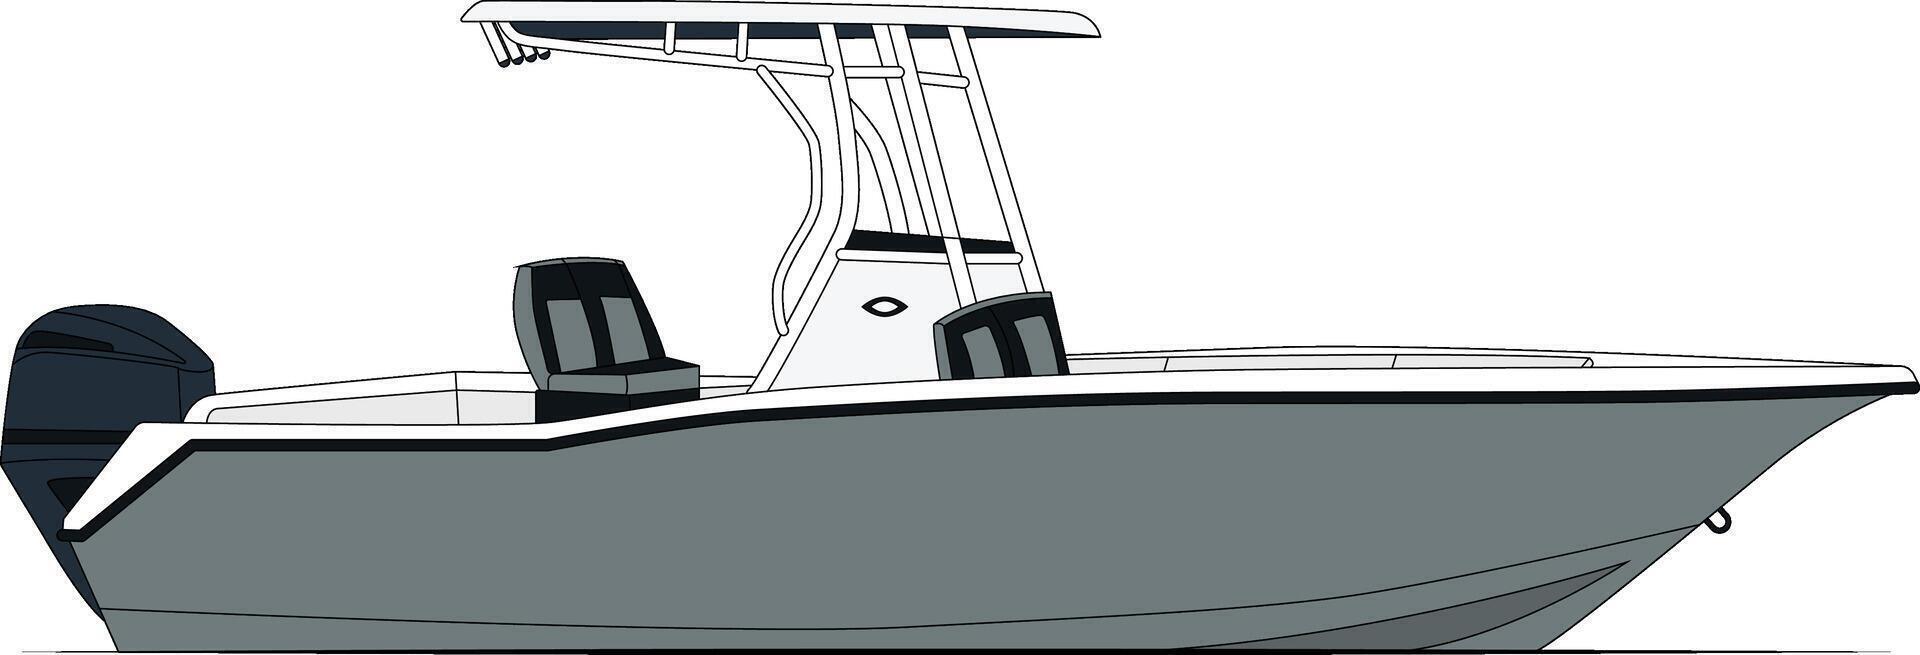 côté vue pêche bateau vecteur